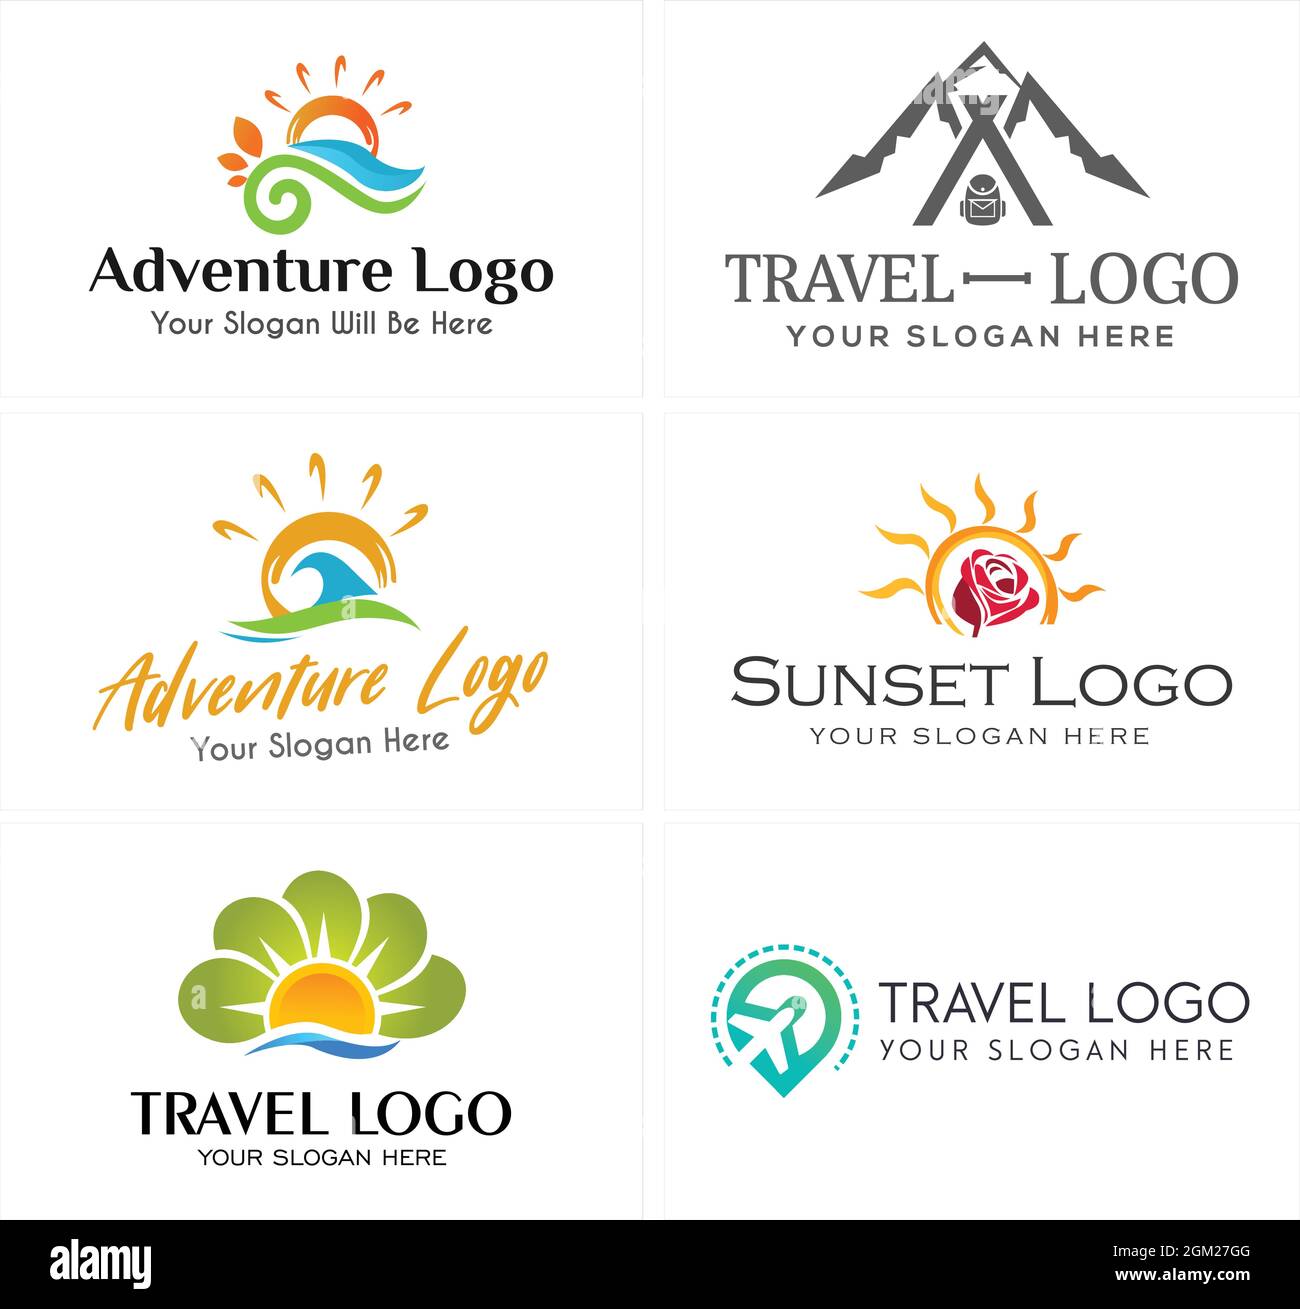 Travel adventure sea mountain plane logo design Stock Vector